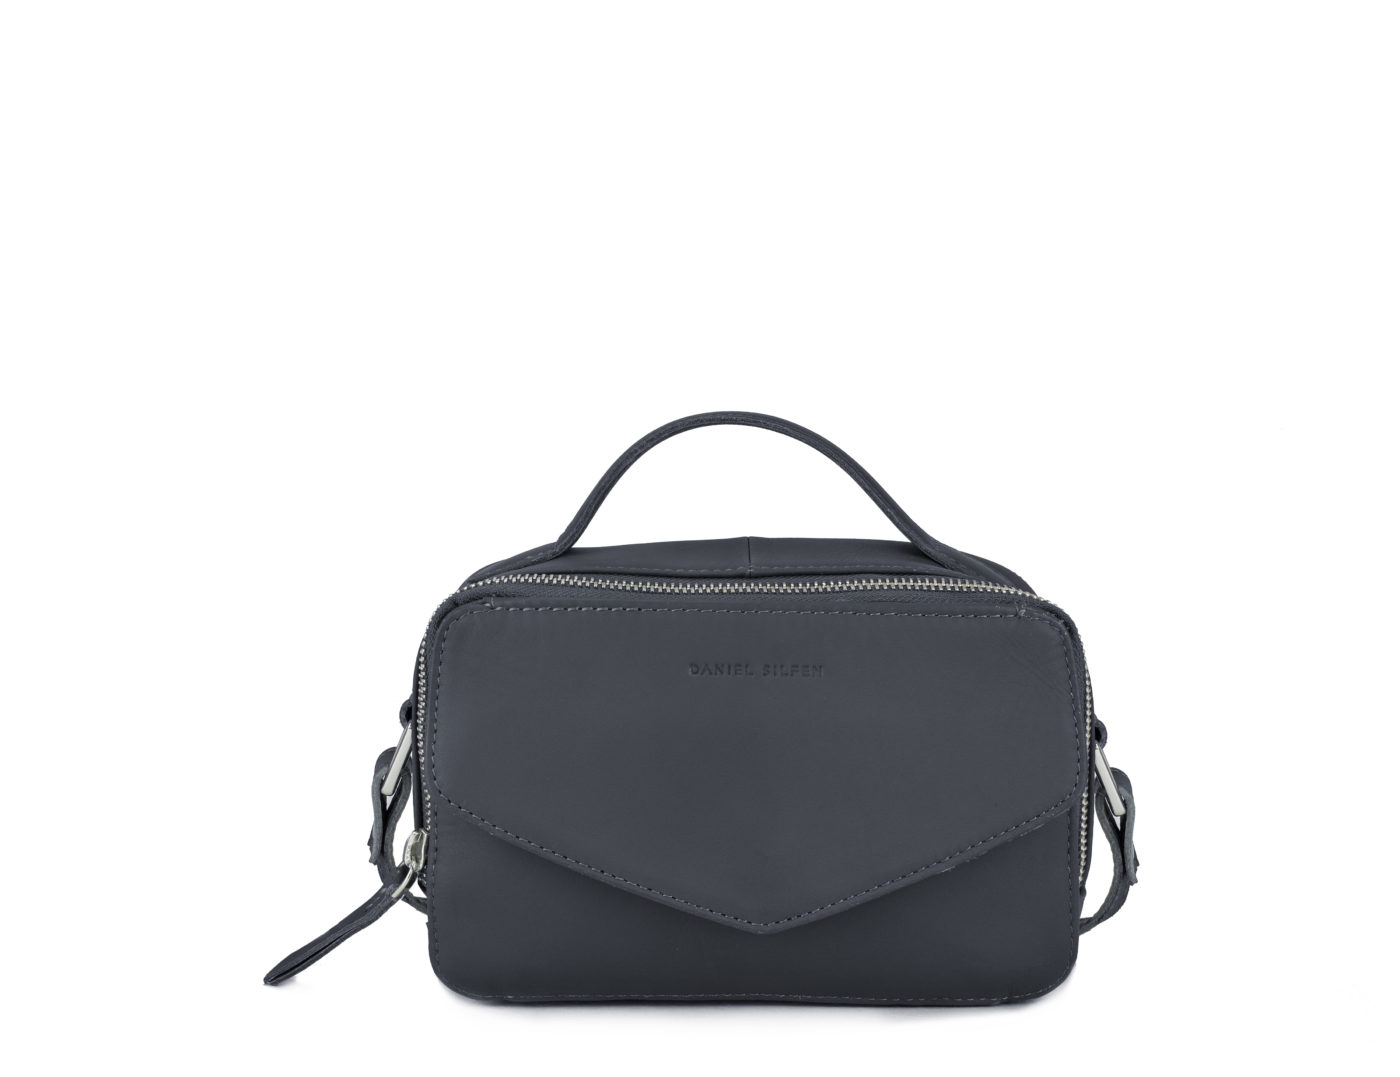 Daniel Silfen - Emma taske - Sort læder. Den uundværlige sorte håndtaske, har en størrelse der passer til lejligheder!